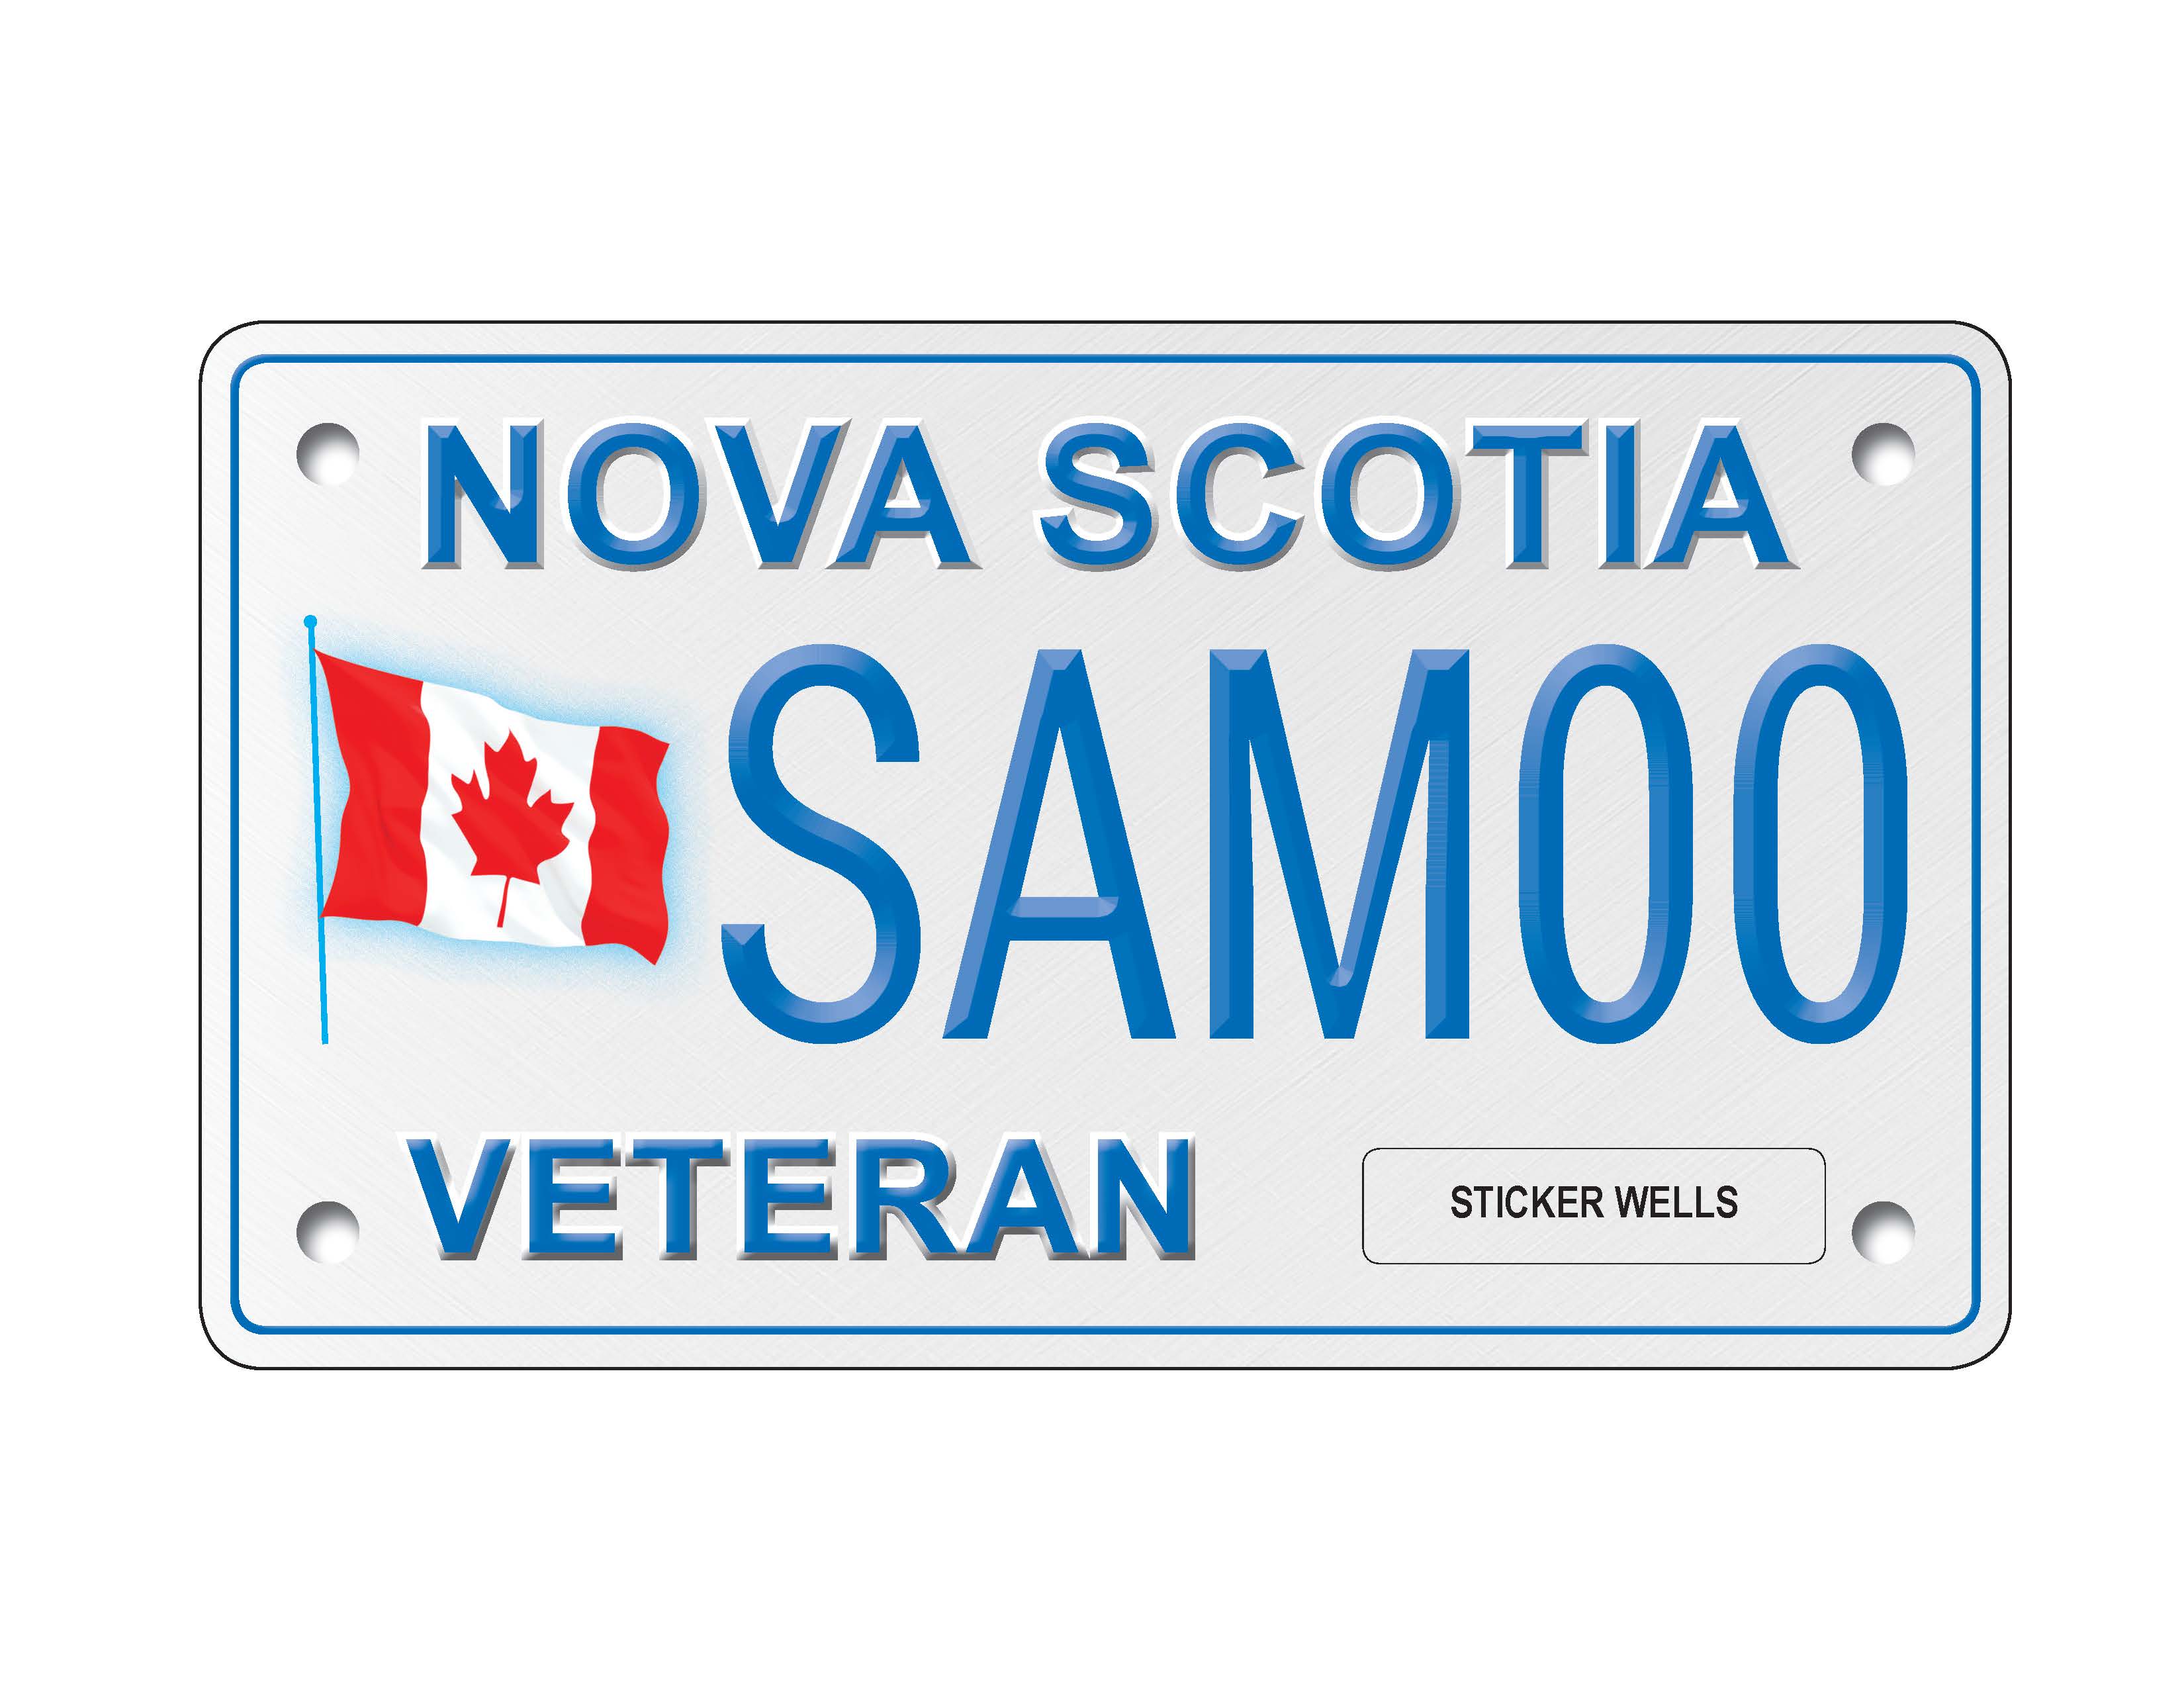 Veteran's motorcycle number plate image